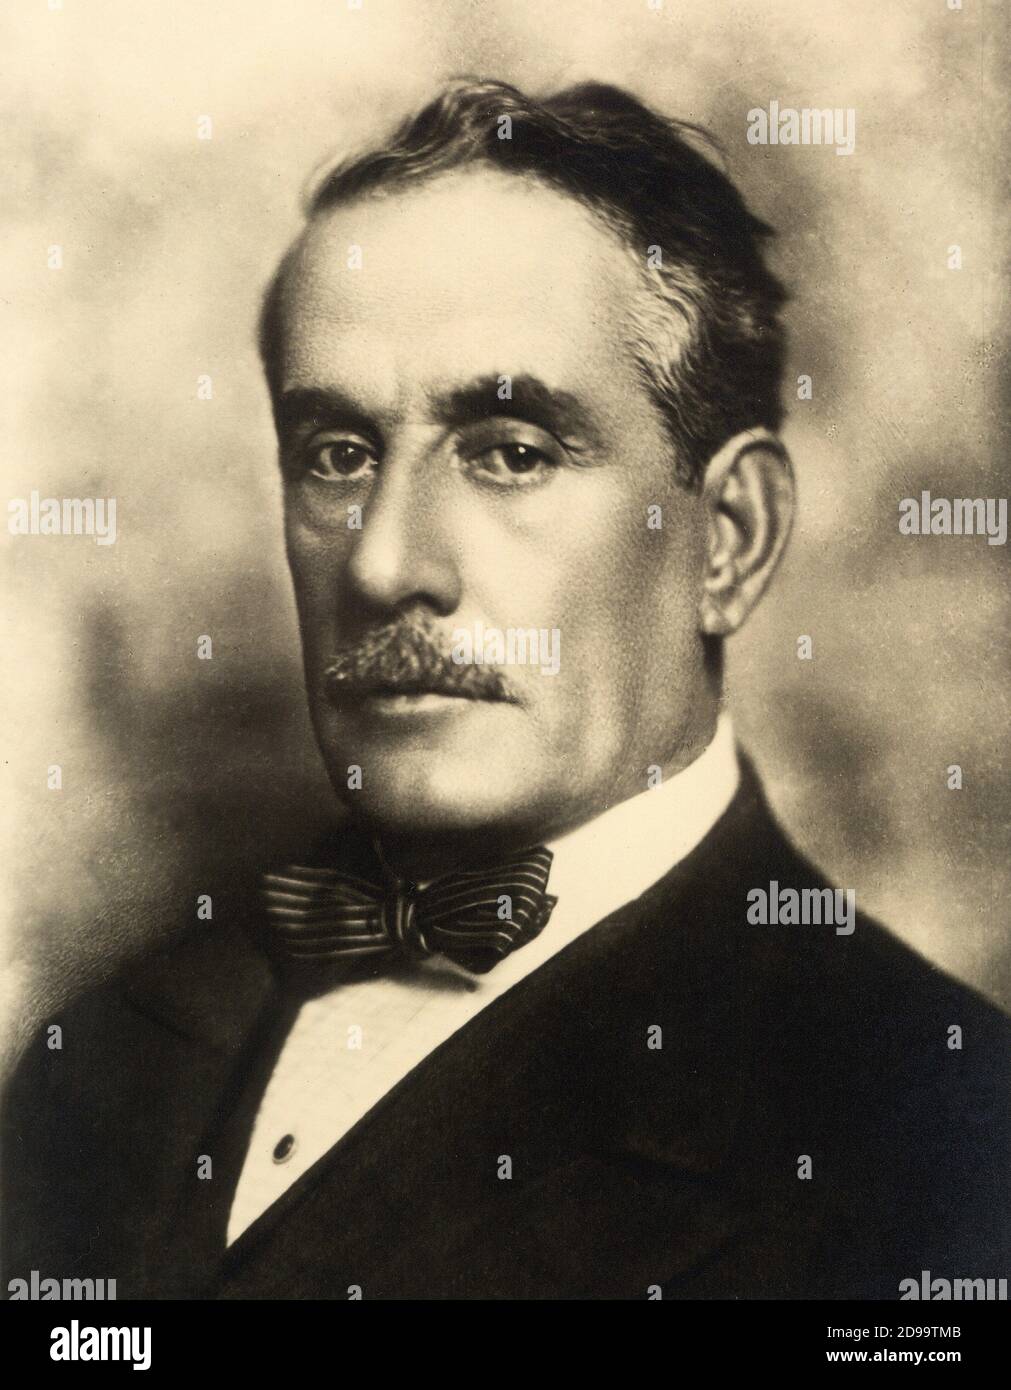 The italian Opera music composer GIACOMO PUCCINI ( 1858 - 1924 ) - MUSICA  CLASSICA - LIRICA - classical - musicista - COMPOSITORE - baffi - moustache  - cravatta papillon - tie ---- Archivio GBB Stock Photo - Alamy